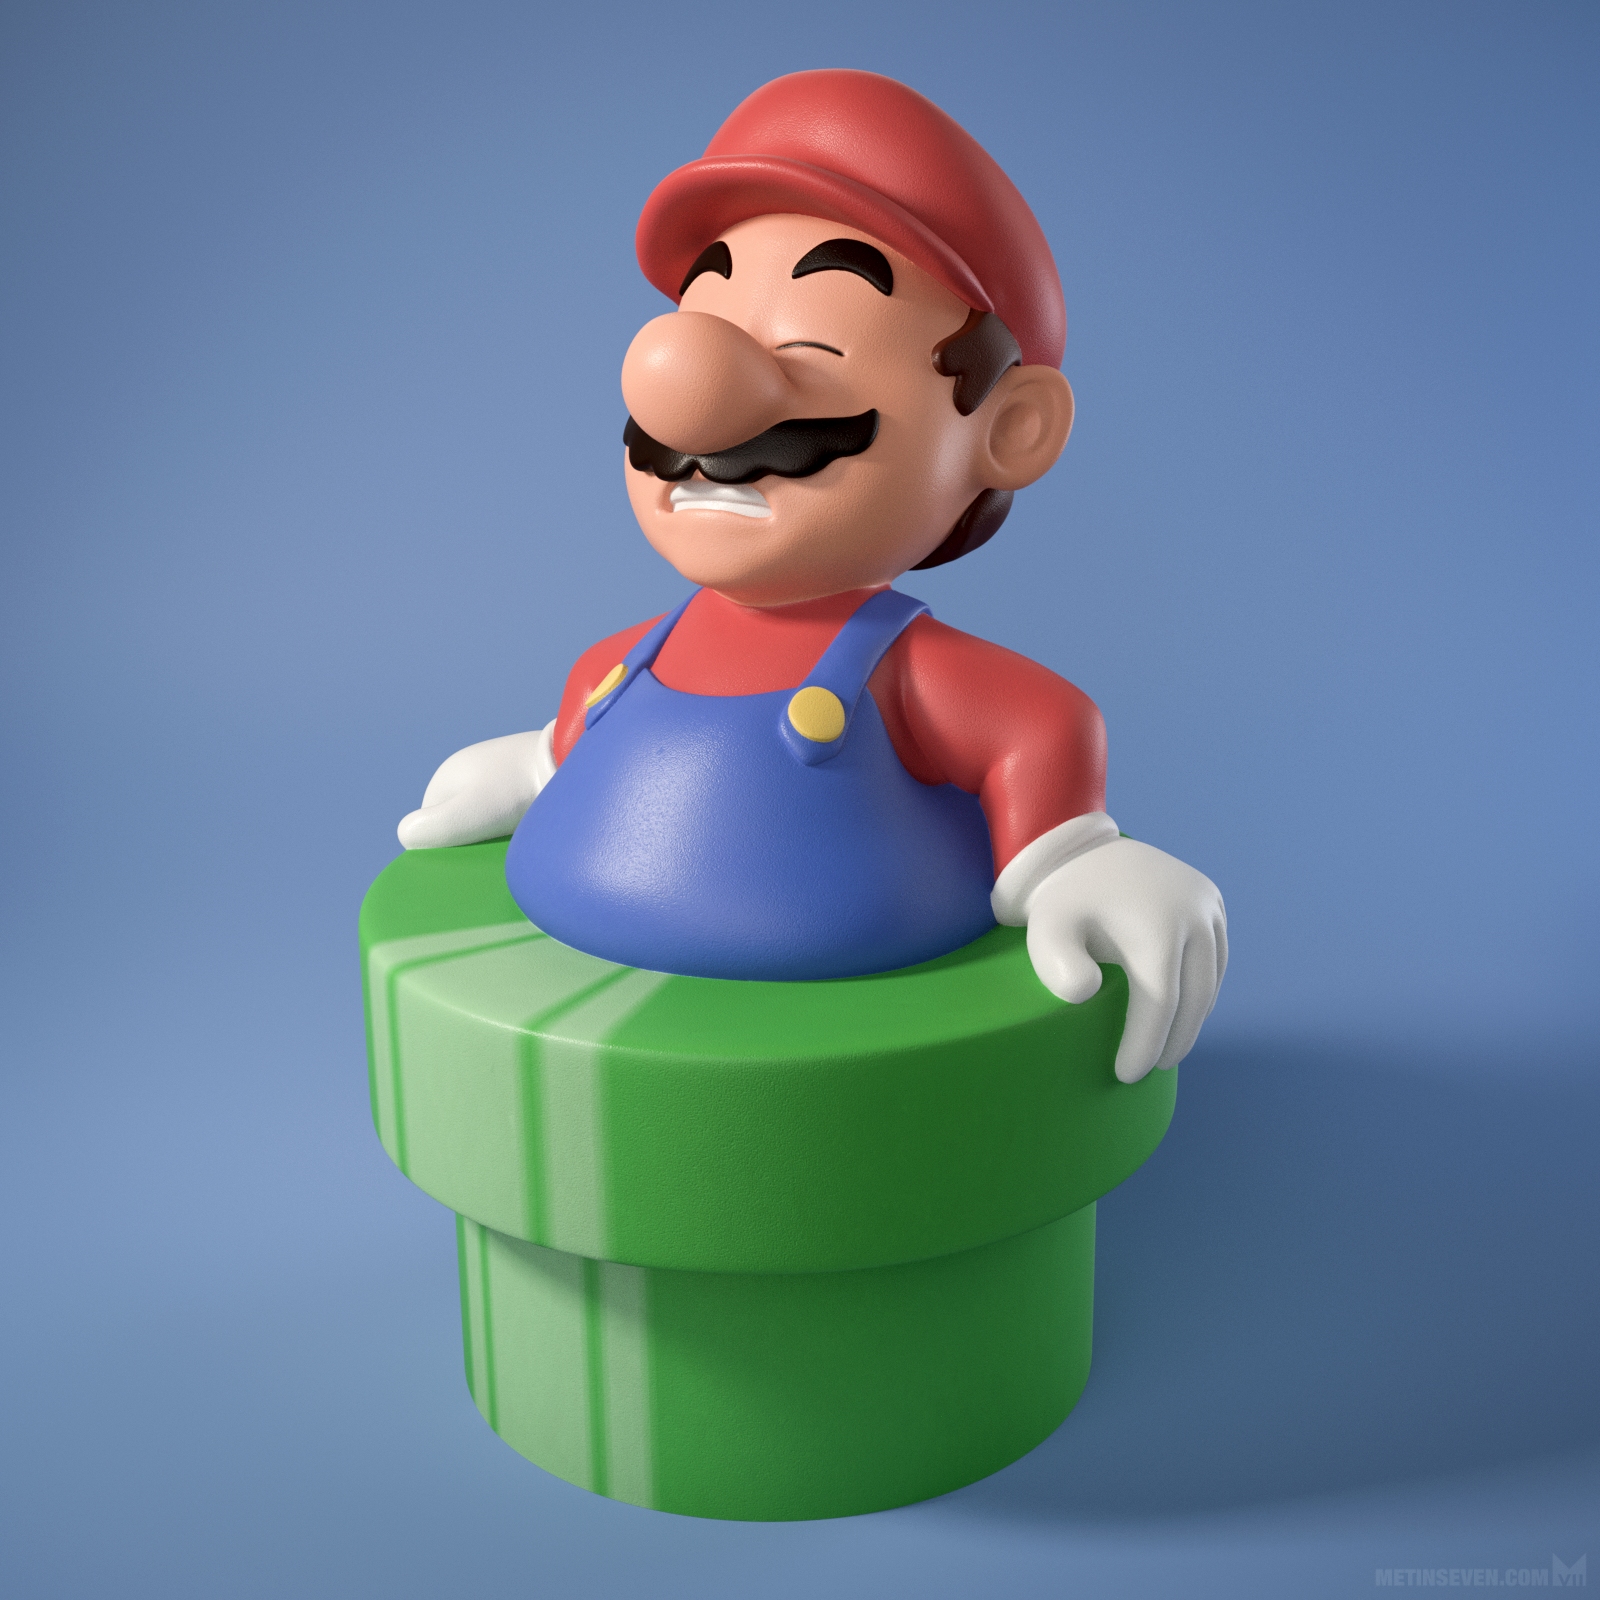 Fat Mario.